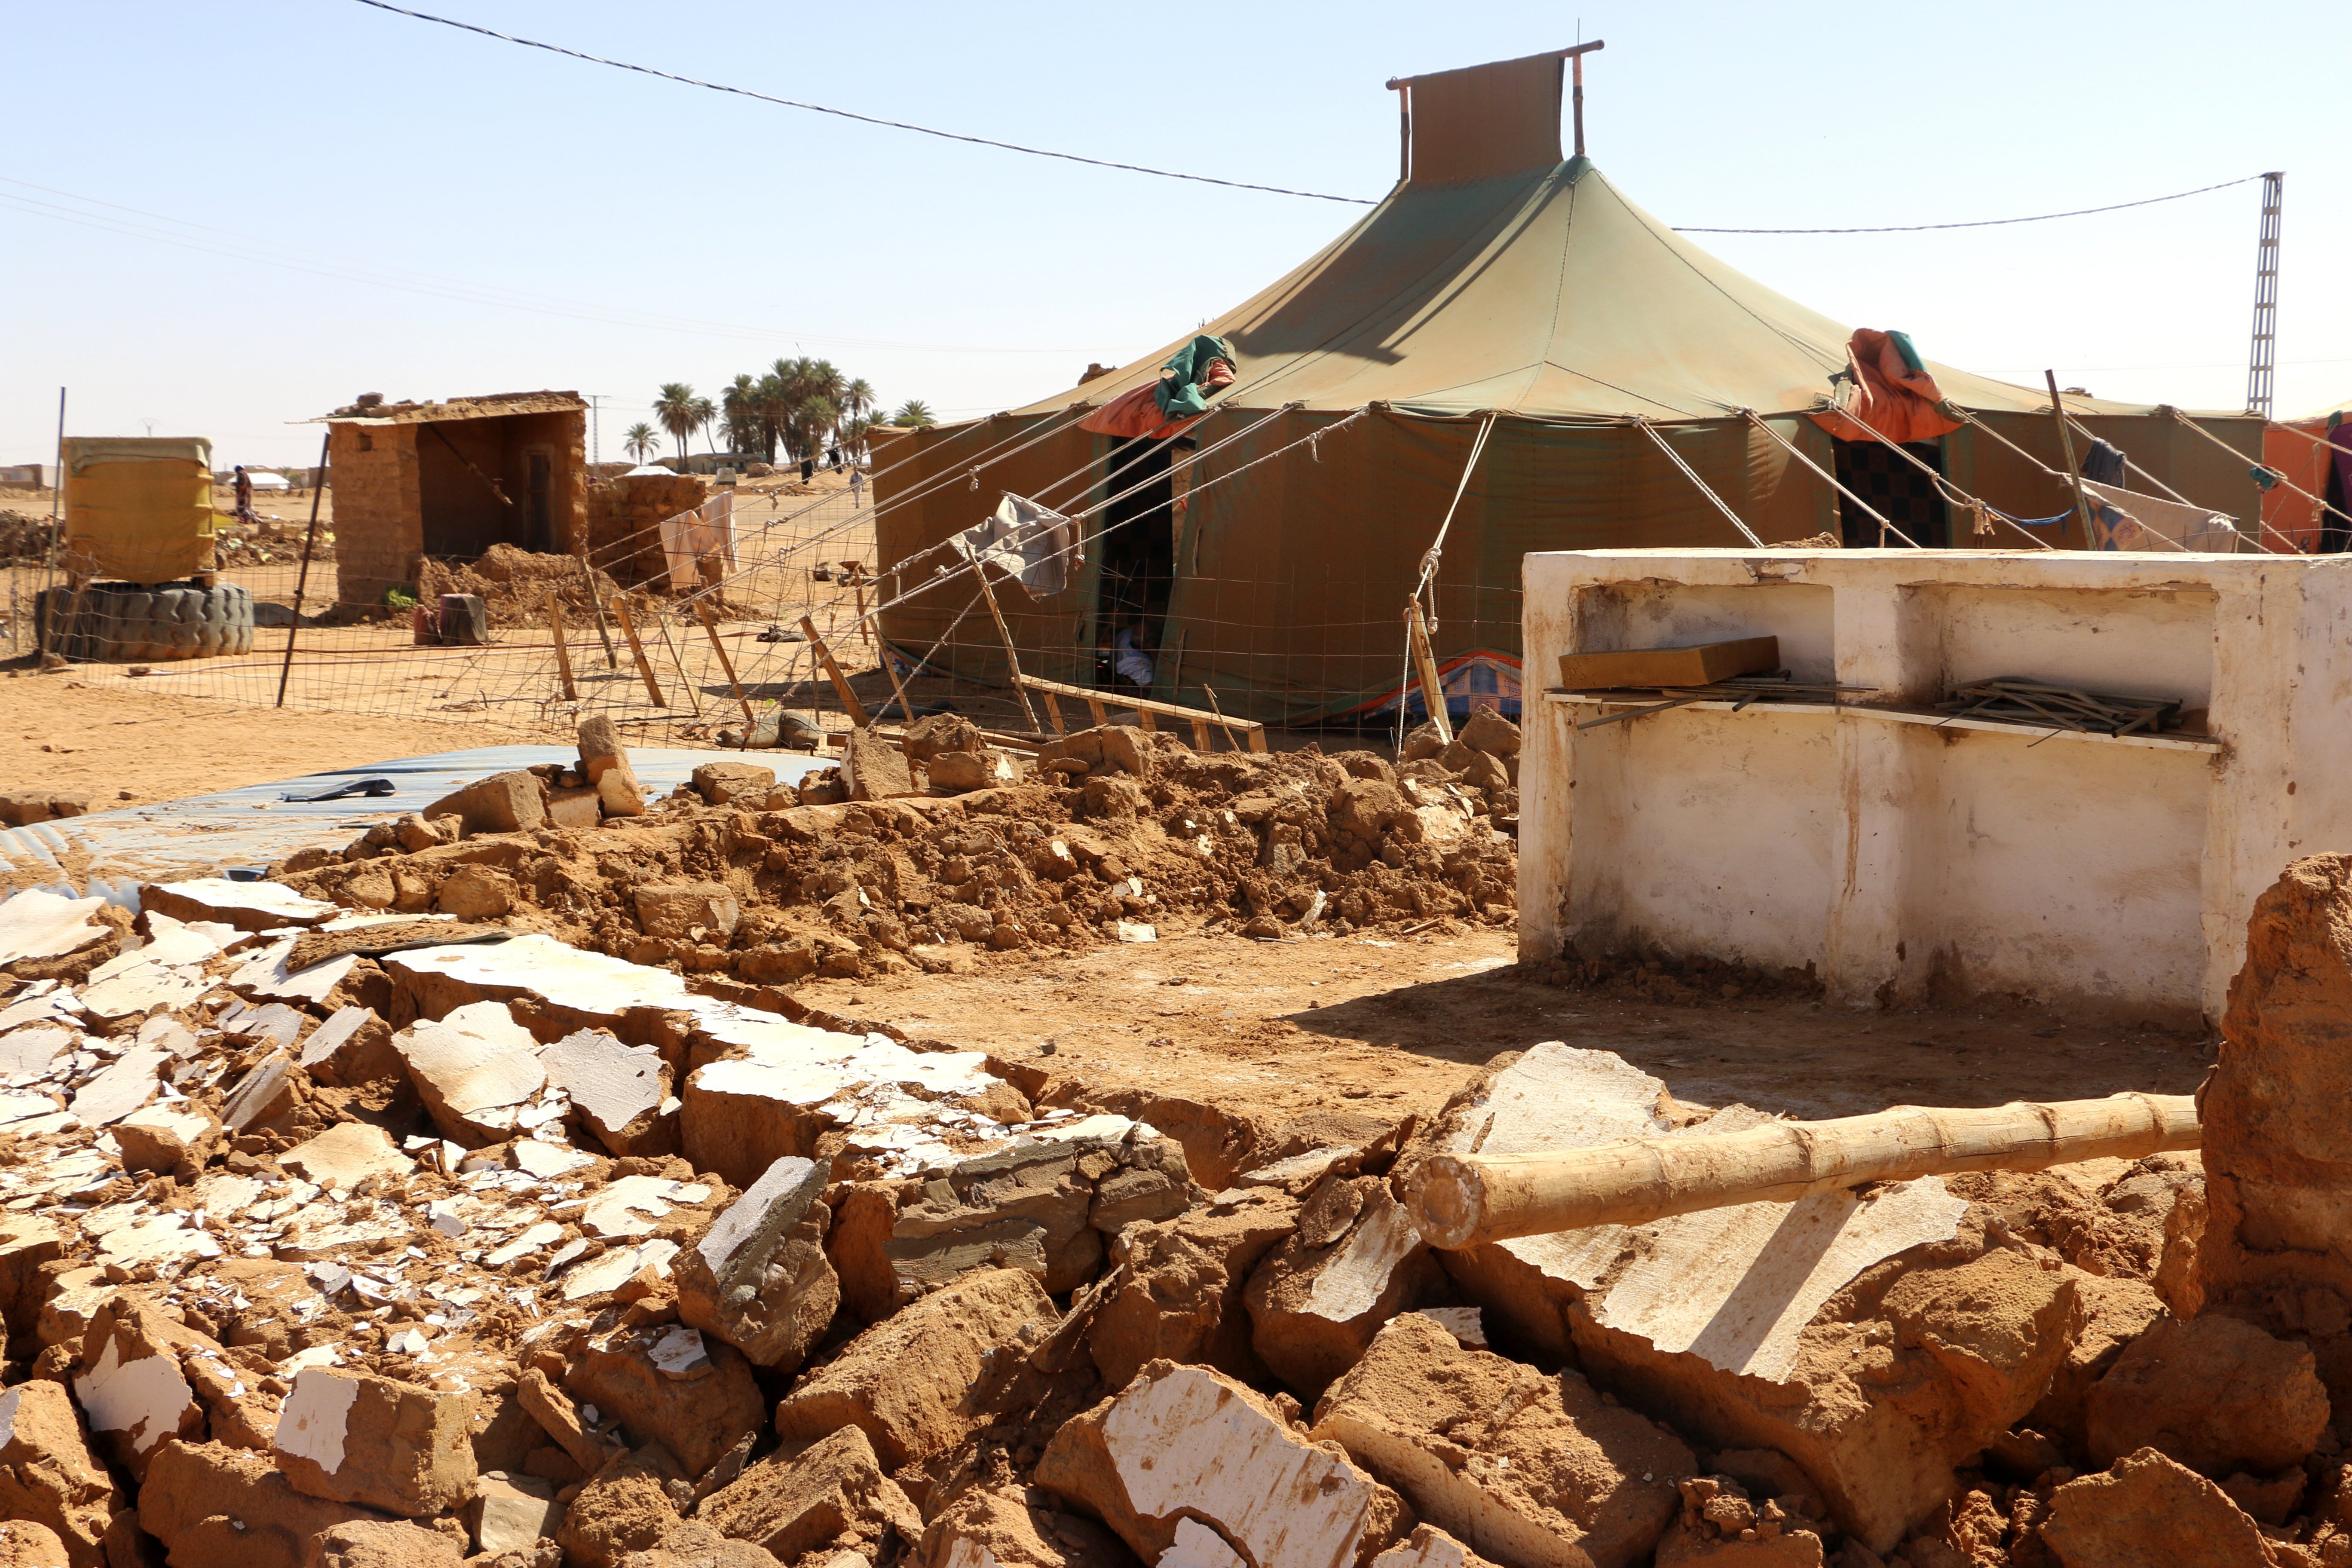 Exteriors desaconsella viatjar als camps sahrauís de Tinduf per activitat terrorista